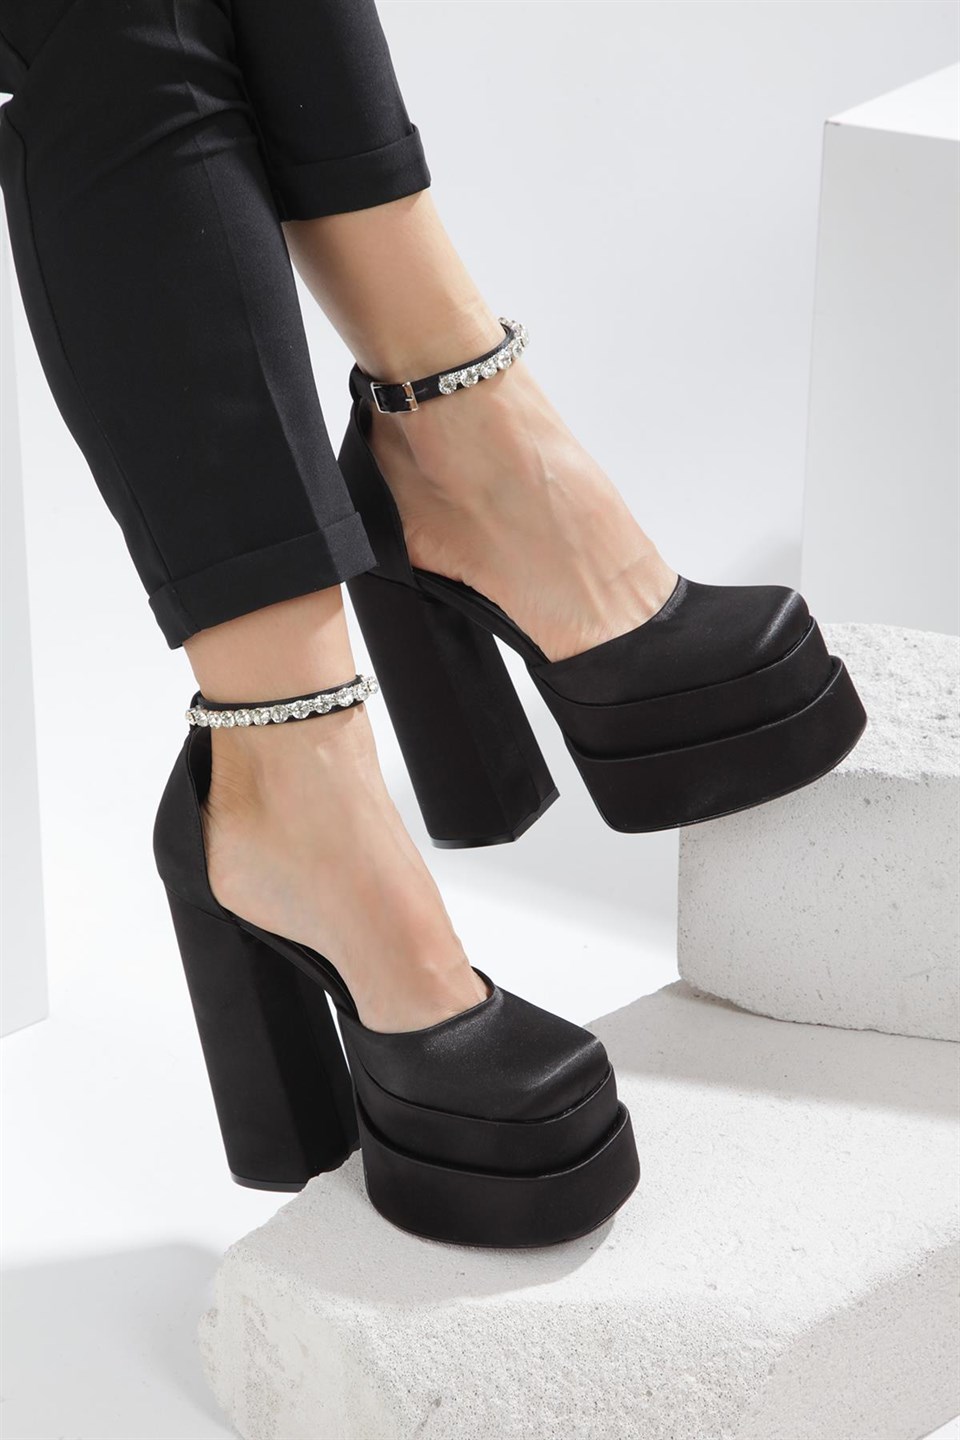 Celinda Siyah Kalın Taban Detaylı Topuklu Ayakkabı